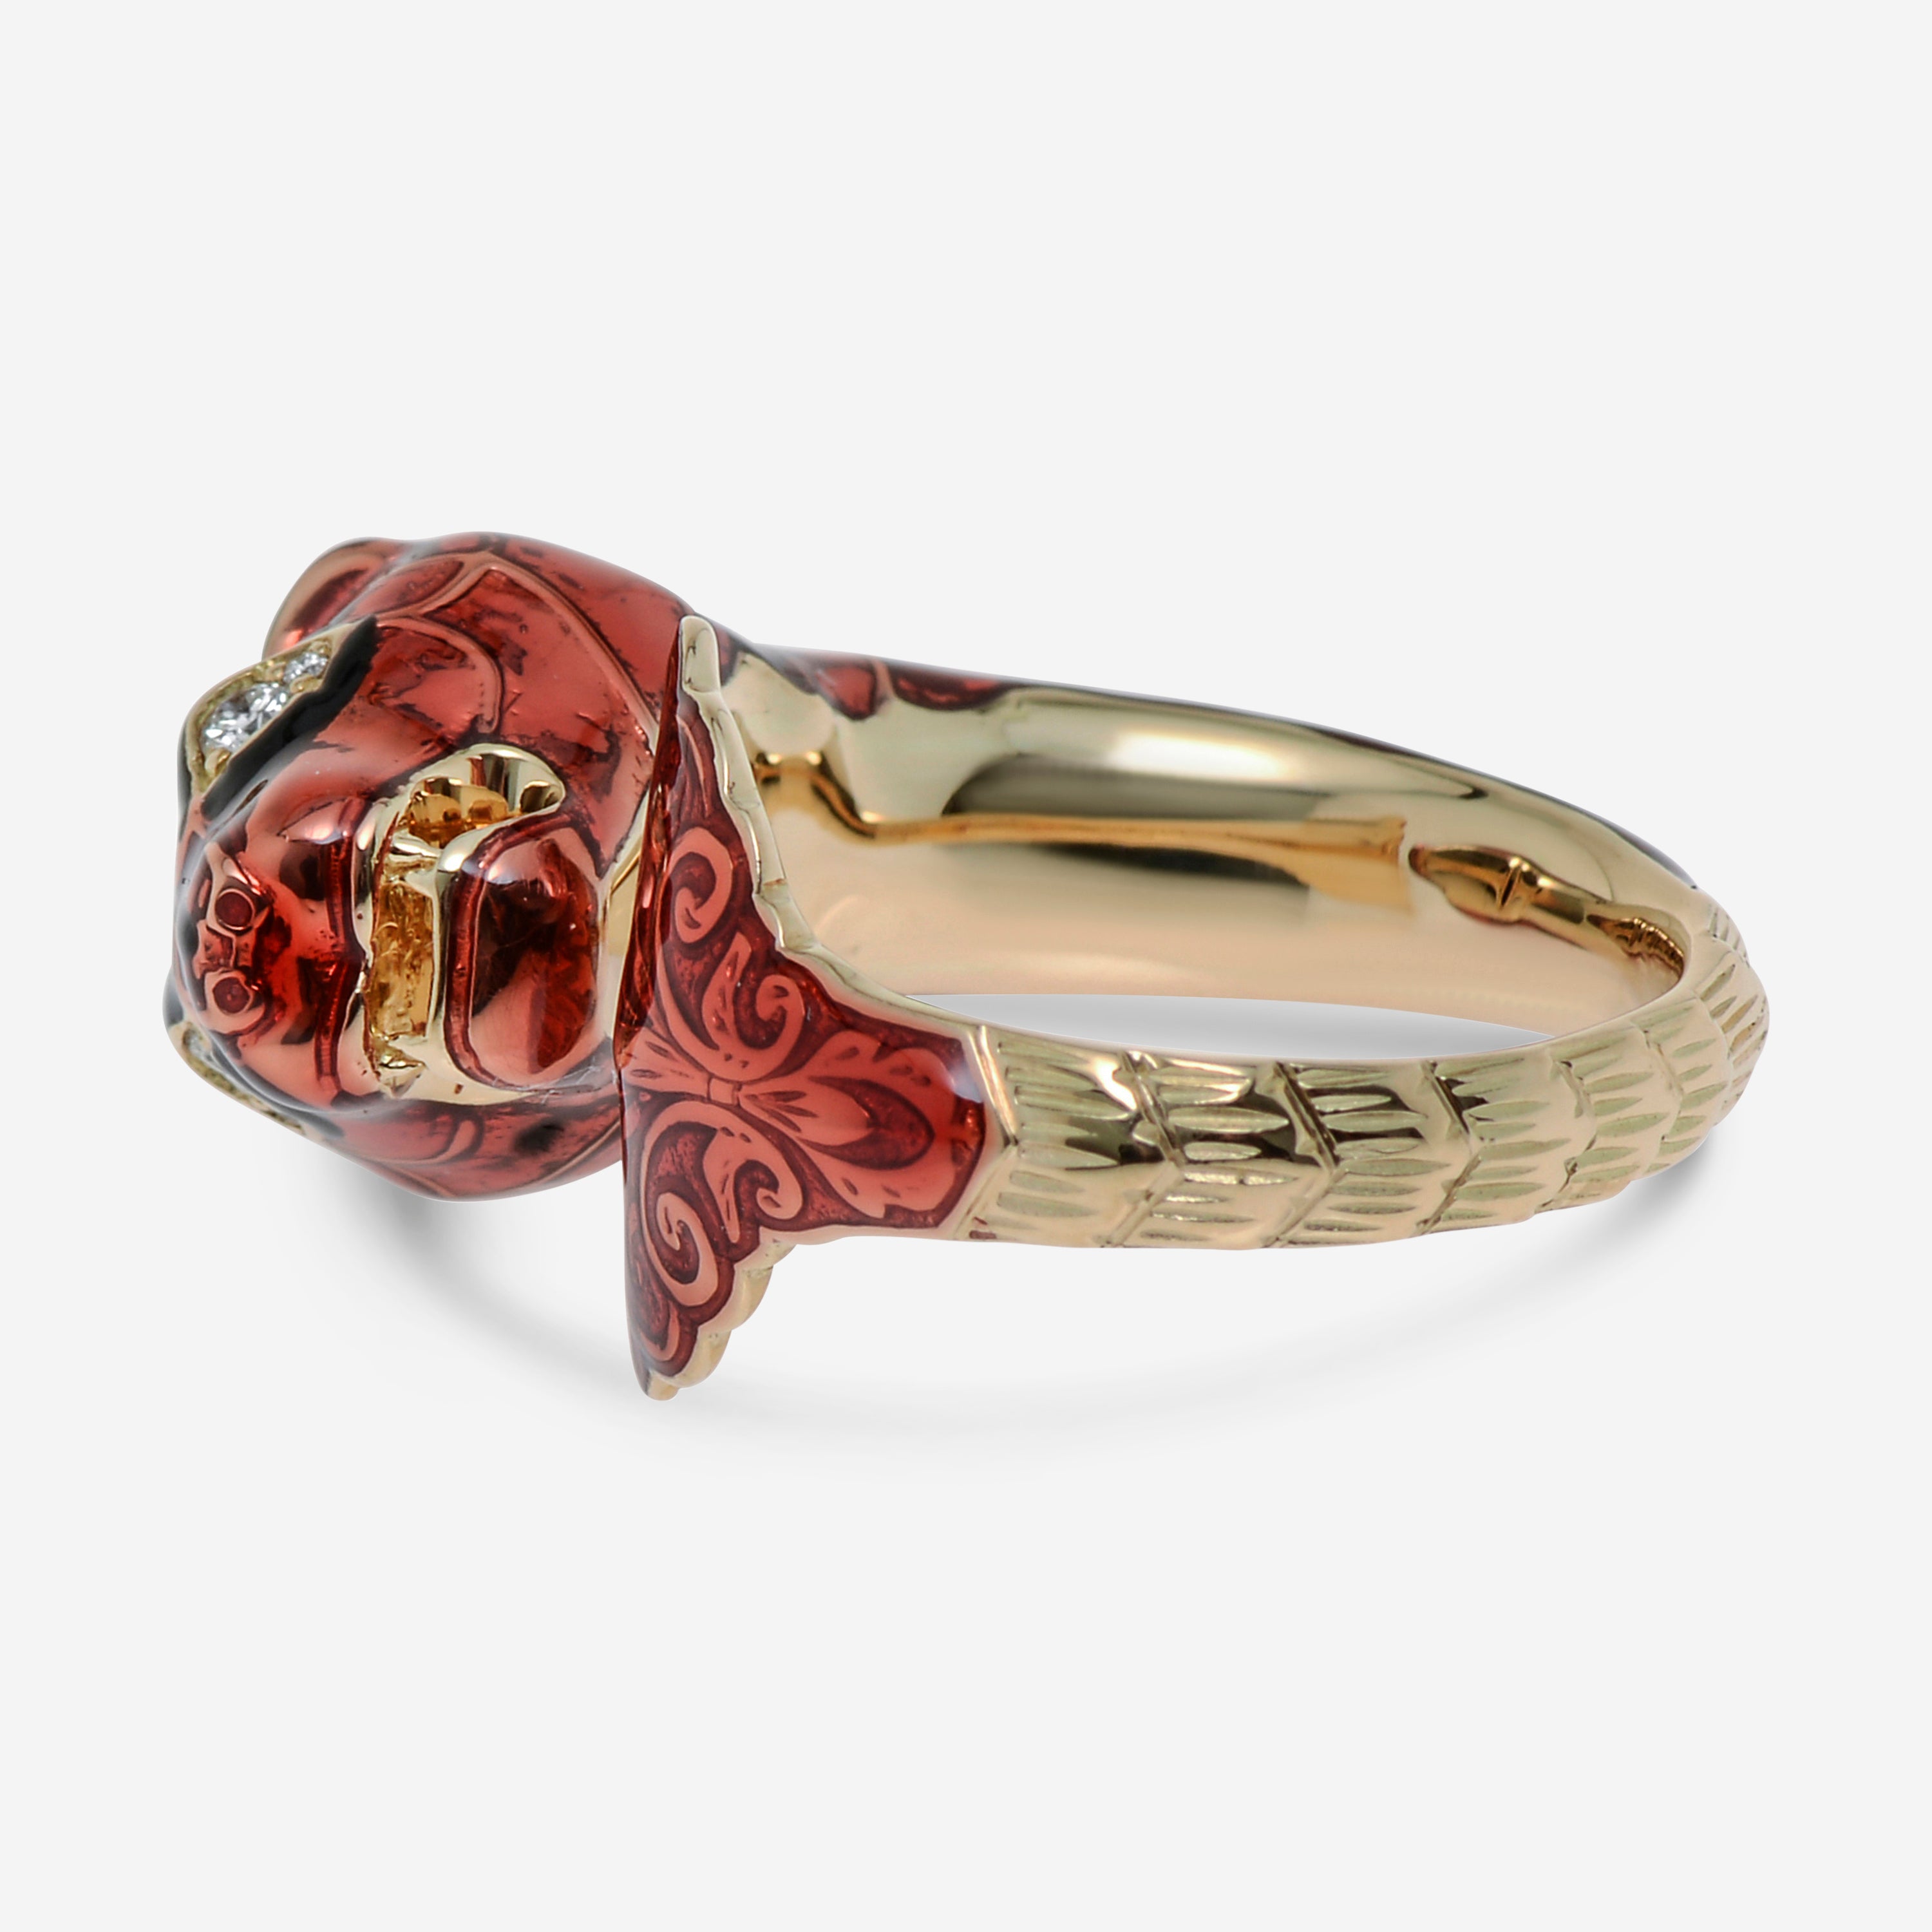 Gucci Le Marché Des Merveilles 18K Rose Gold, Diamond and Enamel Ring YBC462071001013 - THE SOLIST